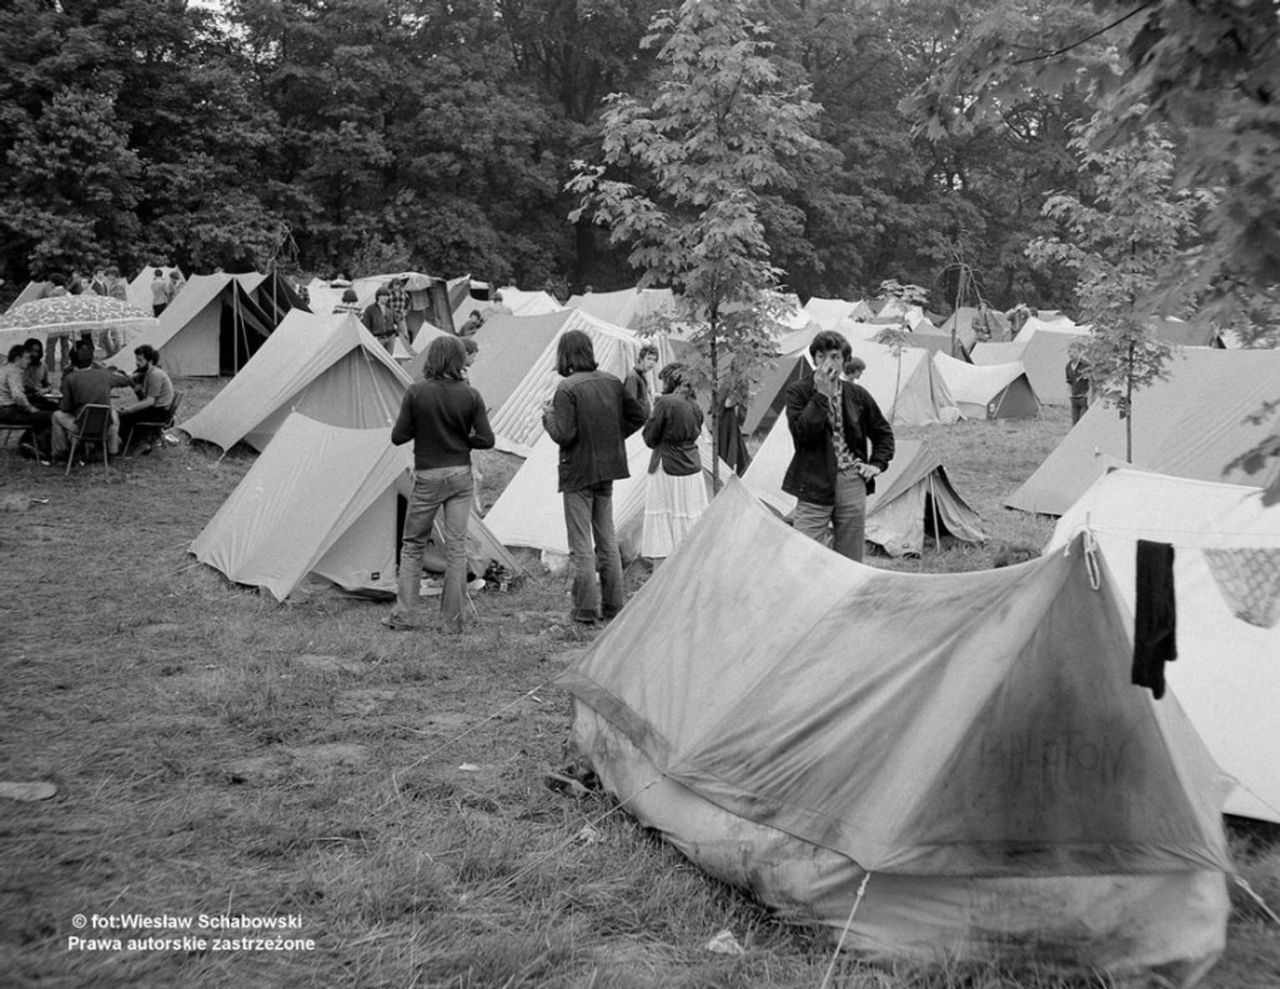 Muzyczny Camping w Lubaniu - zdjęcie zostało opublikowane w portalu eLuban.pl